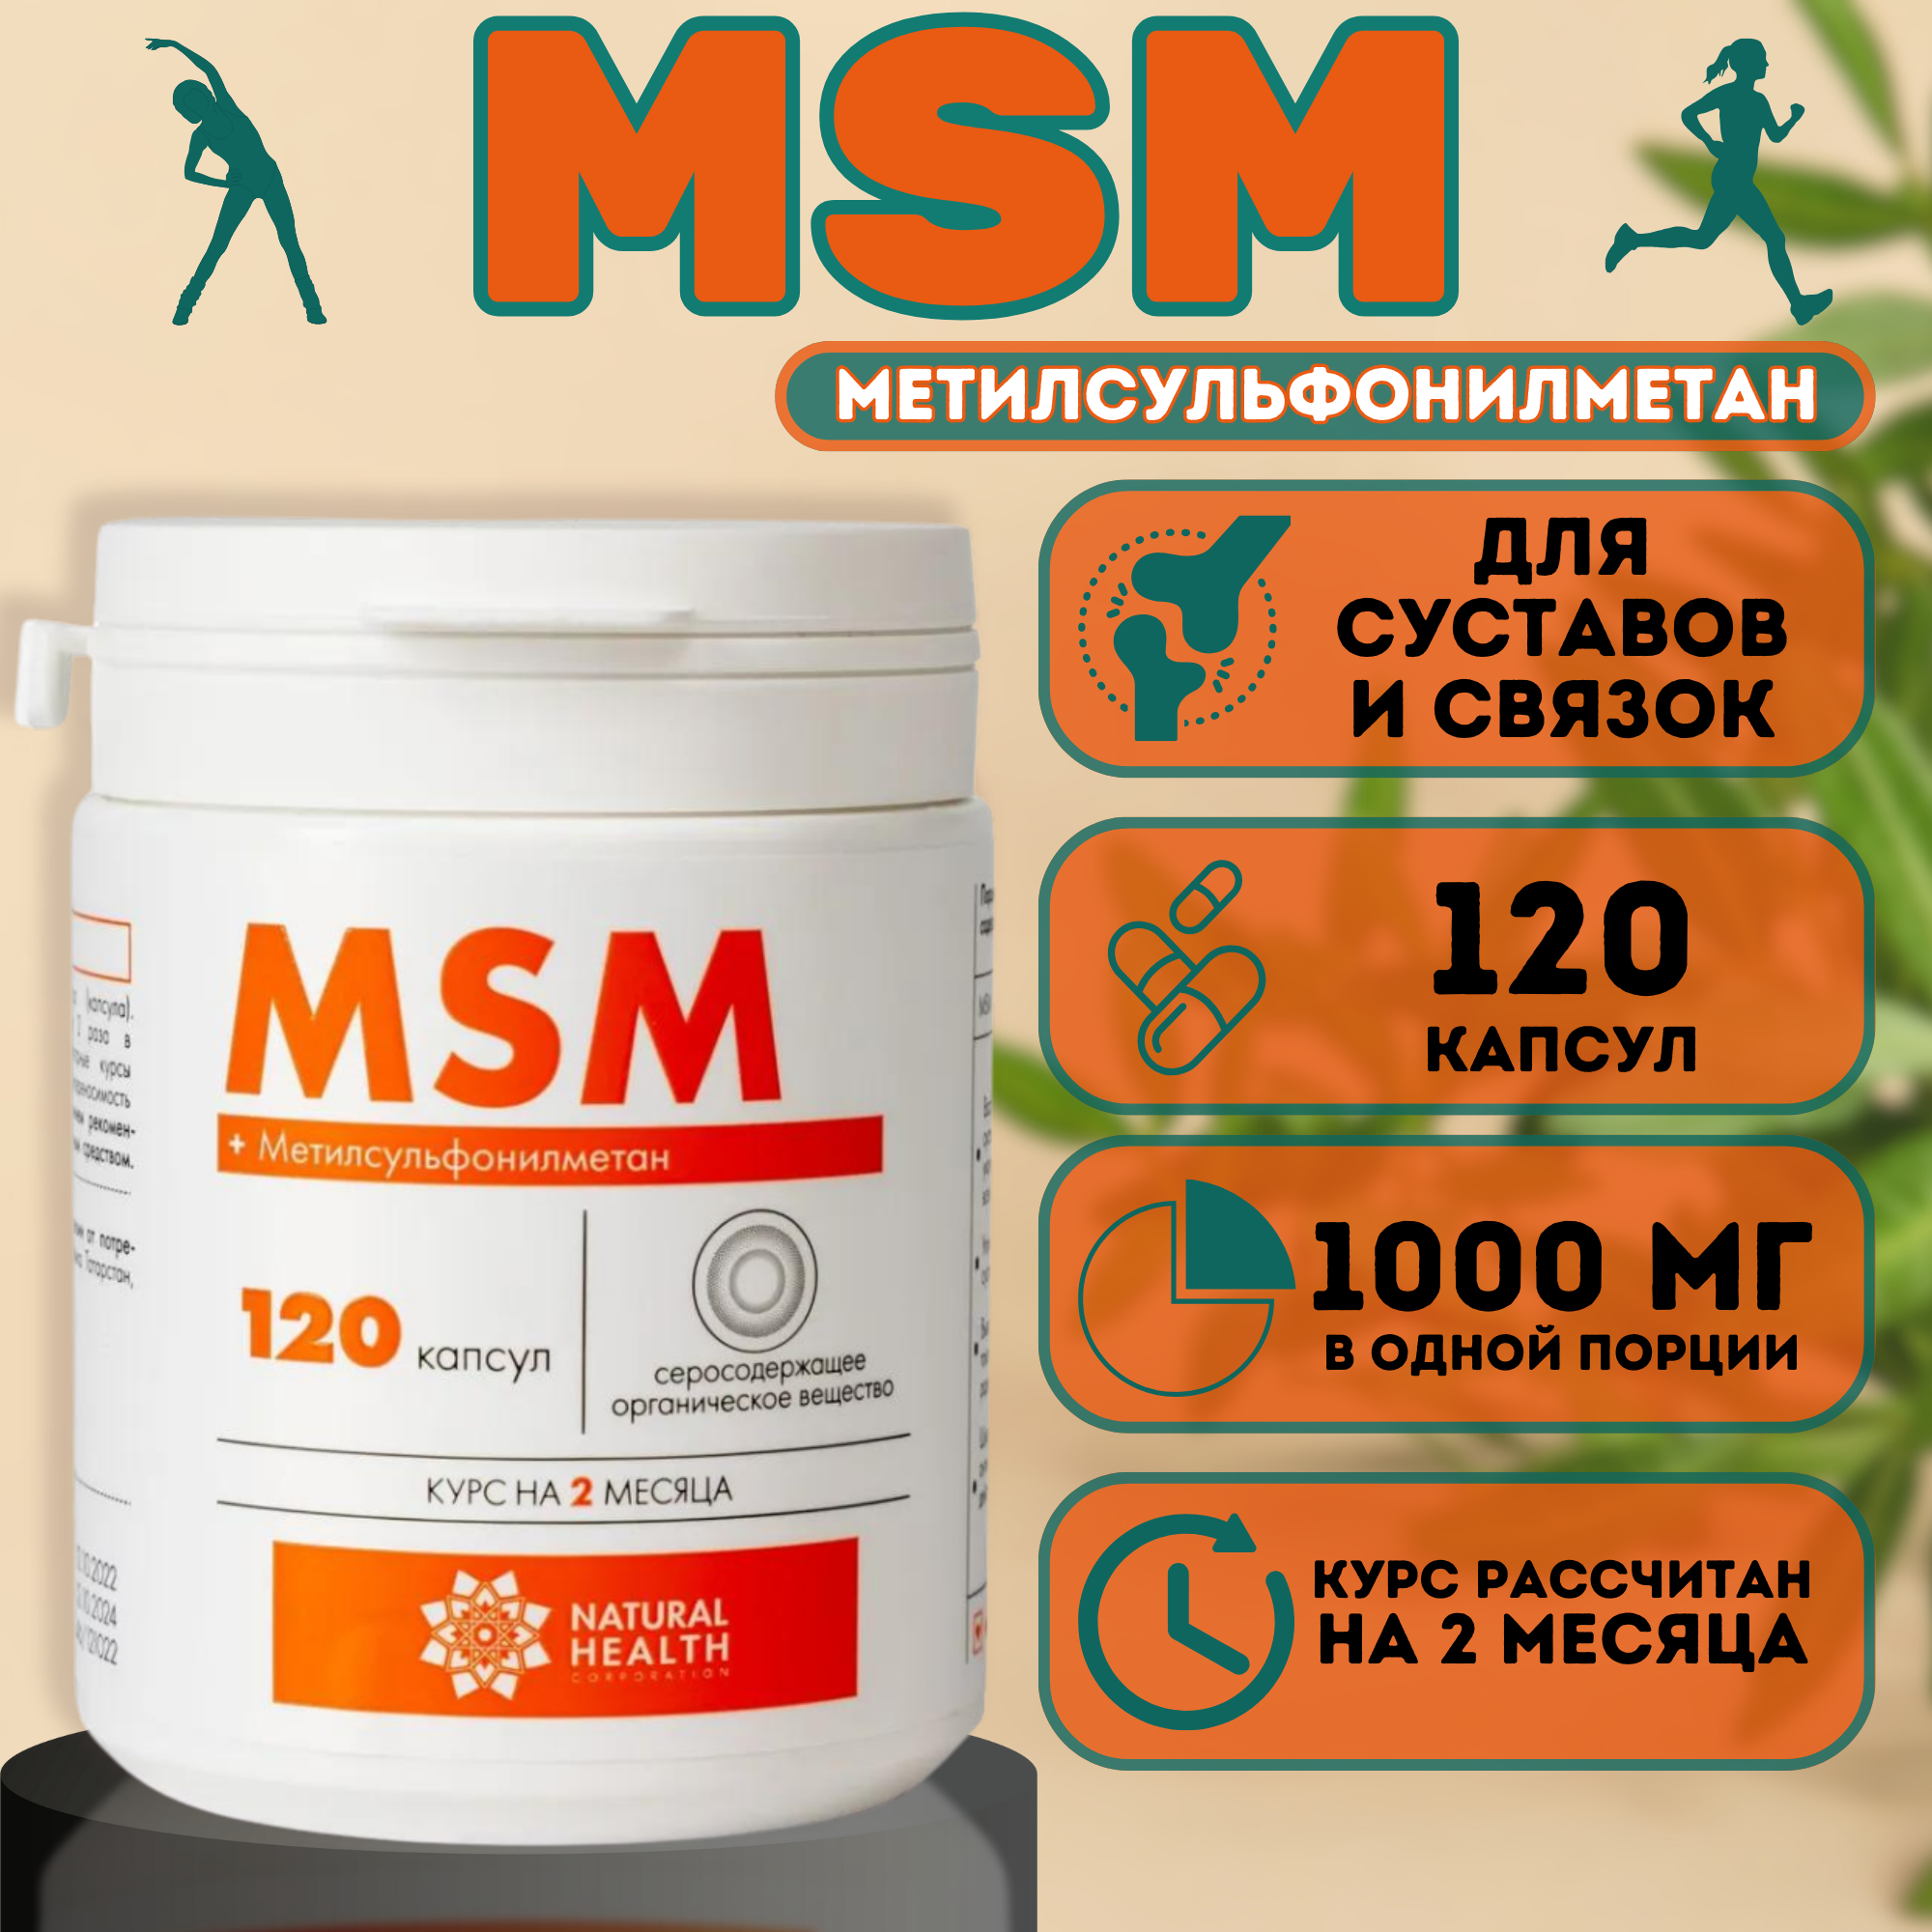 Метилсульфонилметан (MSM) - серосодержащее вещество, 1000 мг, 120 капсул. Спортивное питание, витамин для суставов, хрящей, связок и позвоночника. Курс на 2 месяца. Natural Health, Натуральное Здоровье